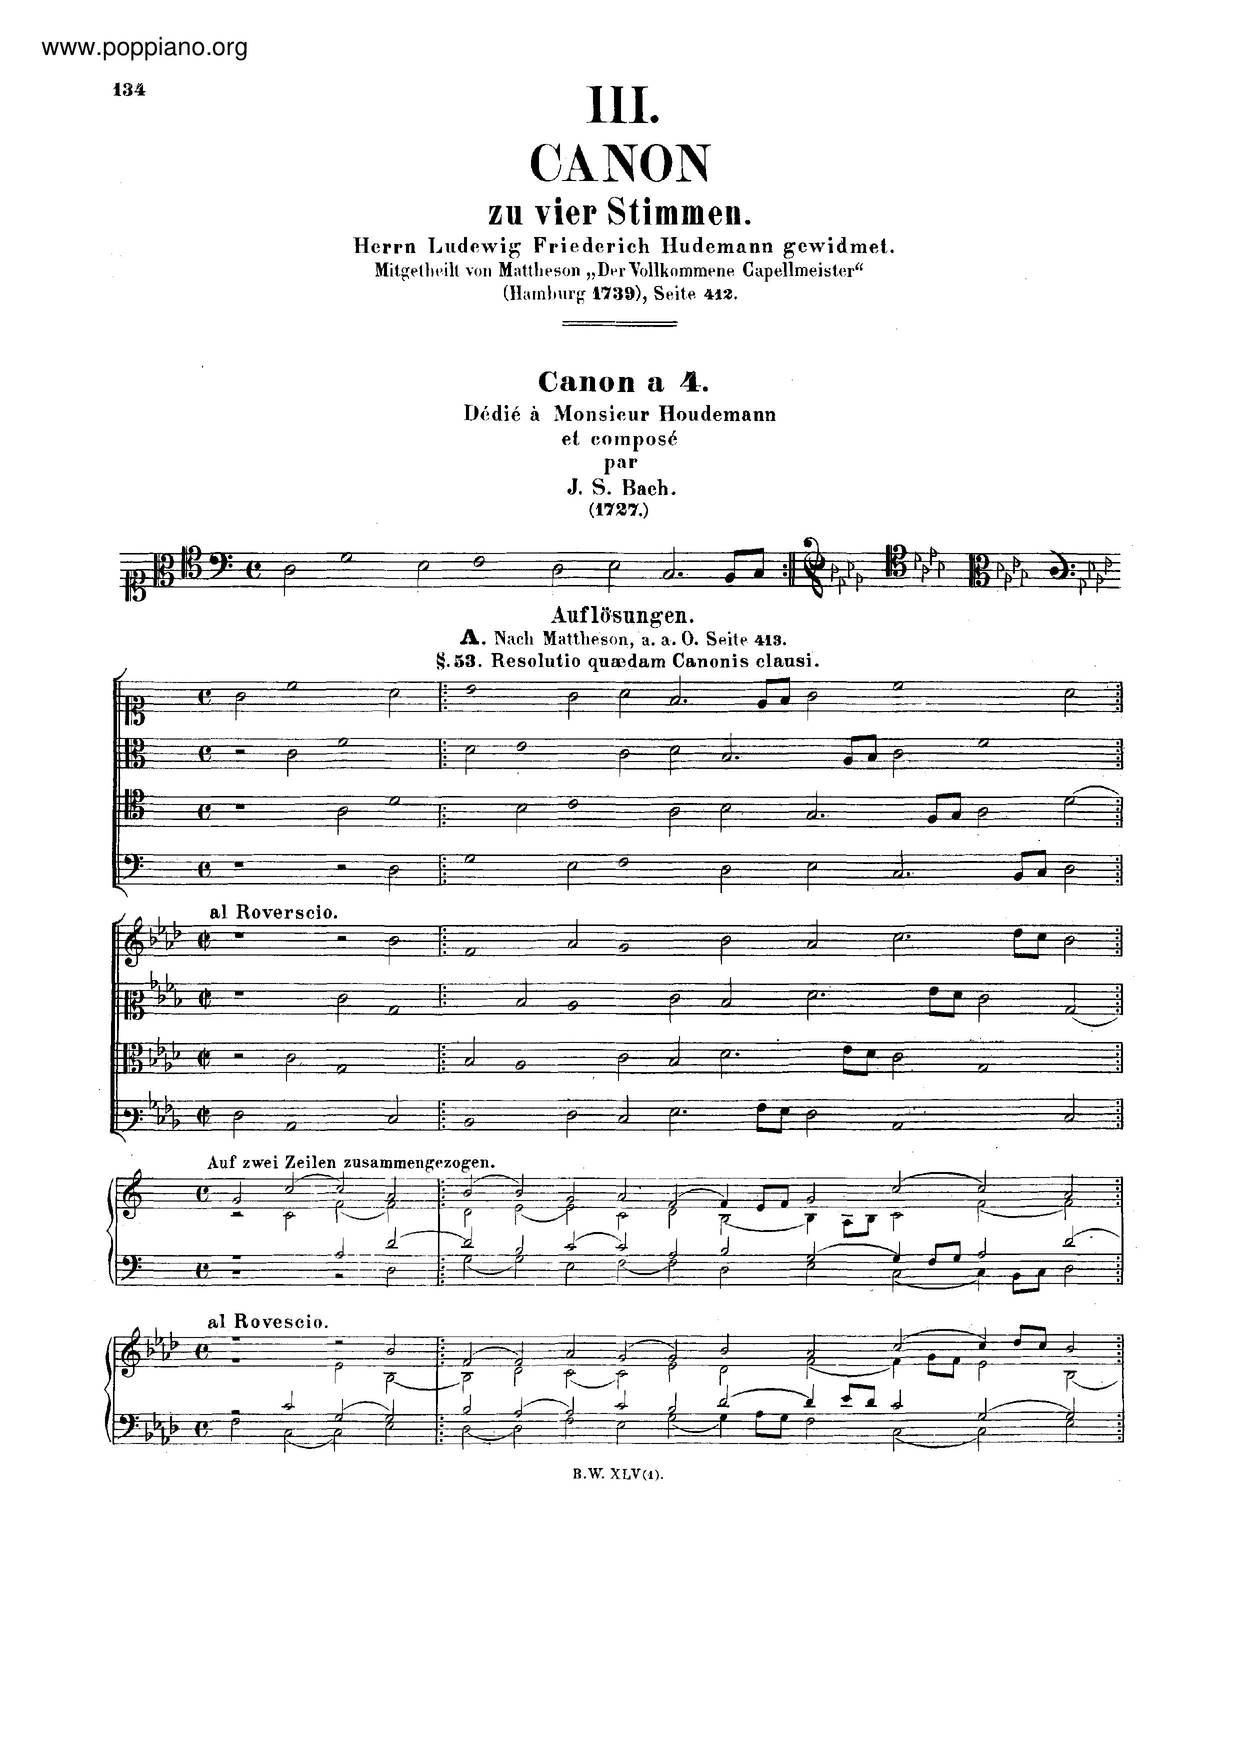 Canon In A Minor, BWV 1074 Score